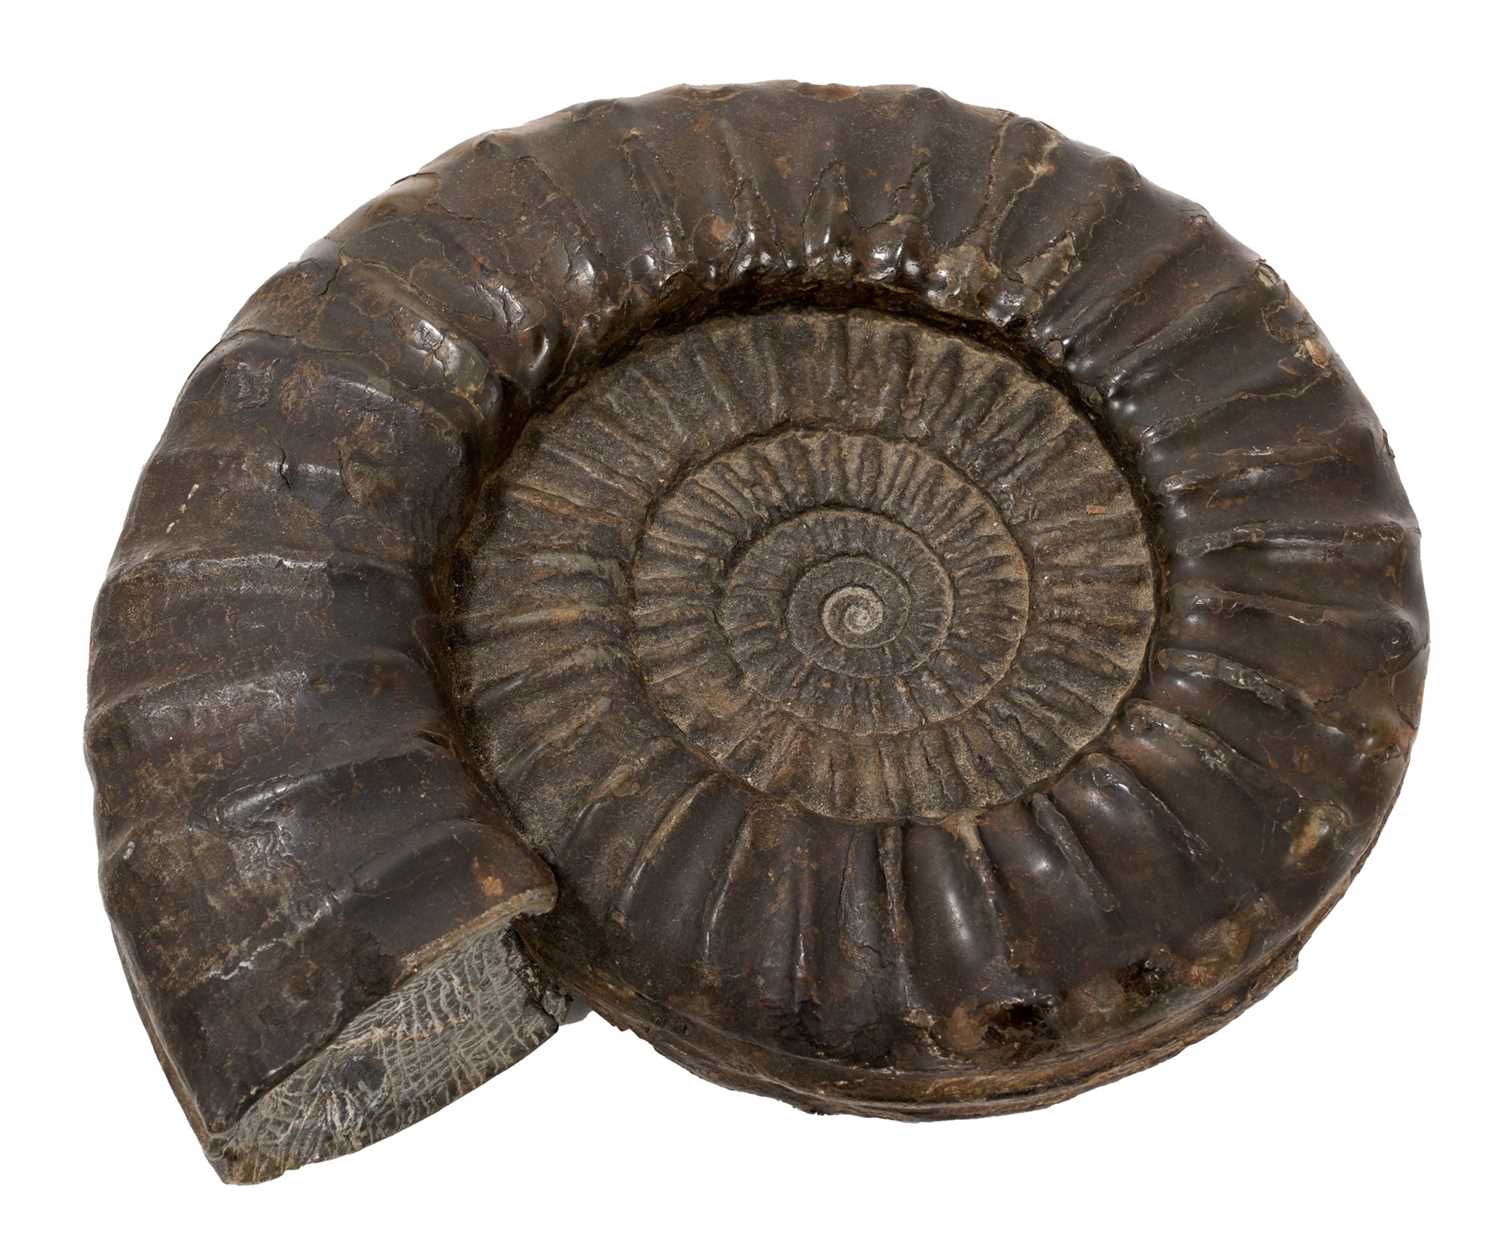 Fine specimen ammonite